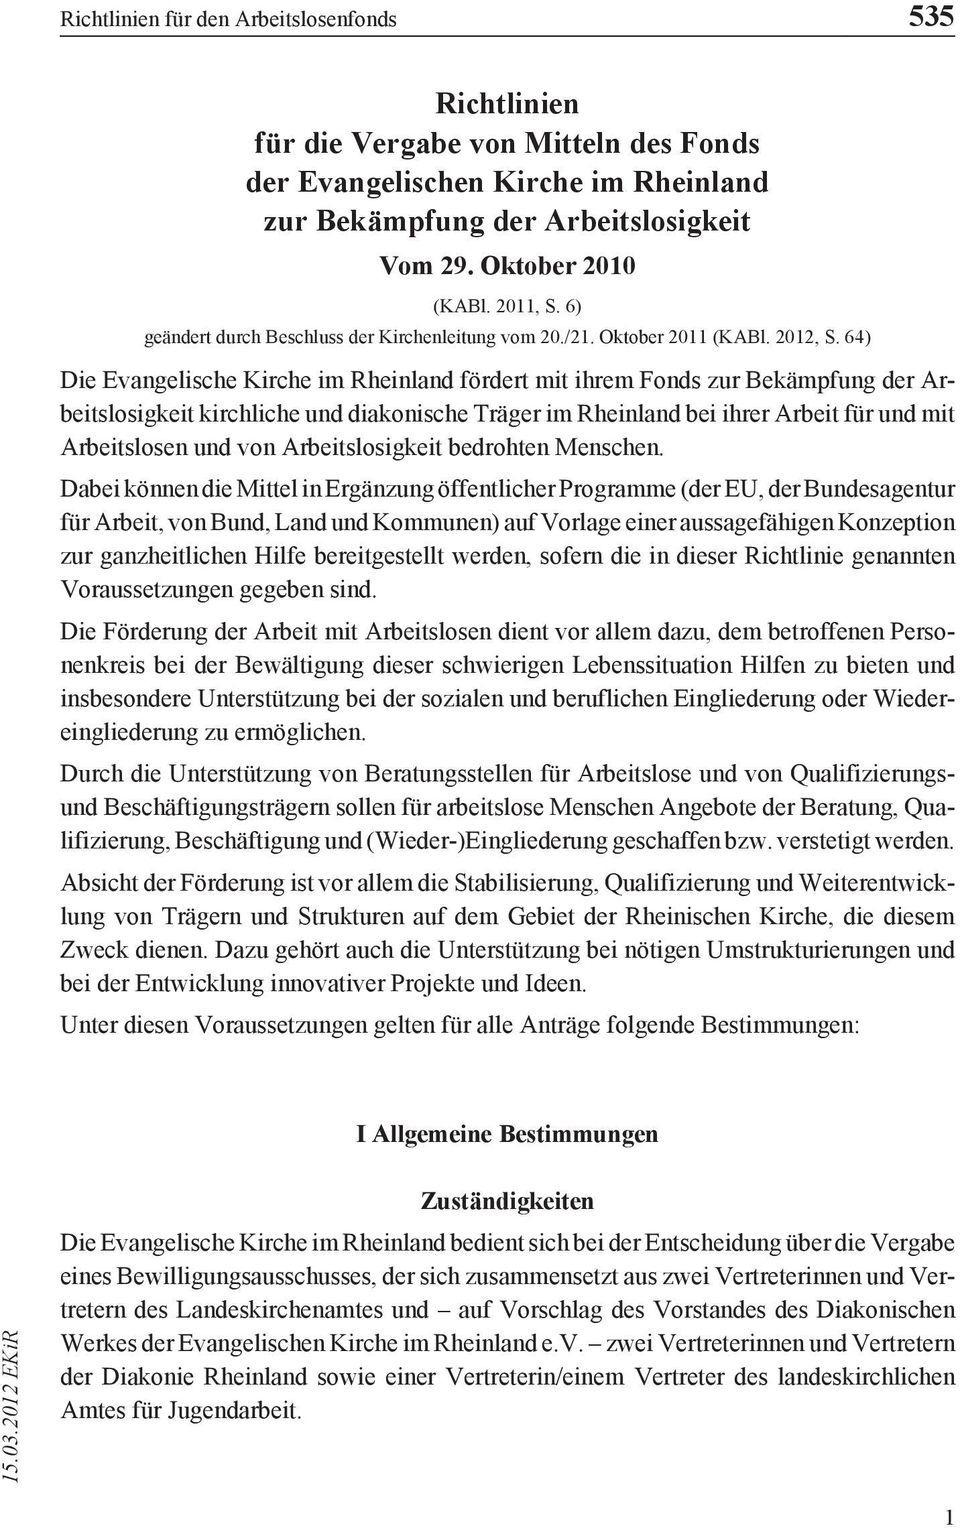 64) Die Evangelische Kirche im Rheinland fördert mit ihrem Fonds zur Bekämpfung der Arbeitslosigkeit kirchliche und diakonische Träger im Rheinland bei ihrer Arbeit für und mit Arbeitslosen und von